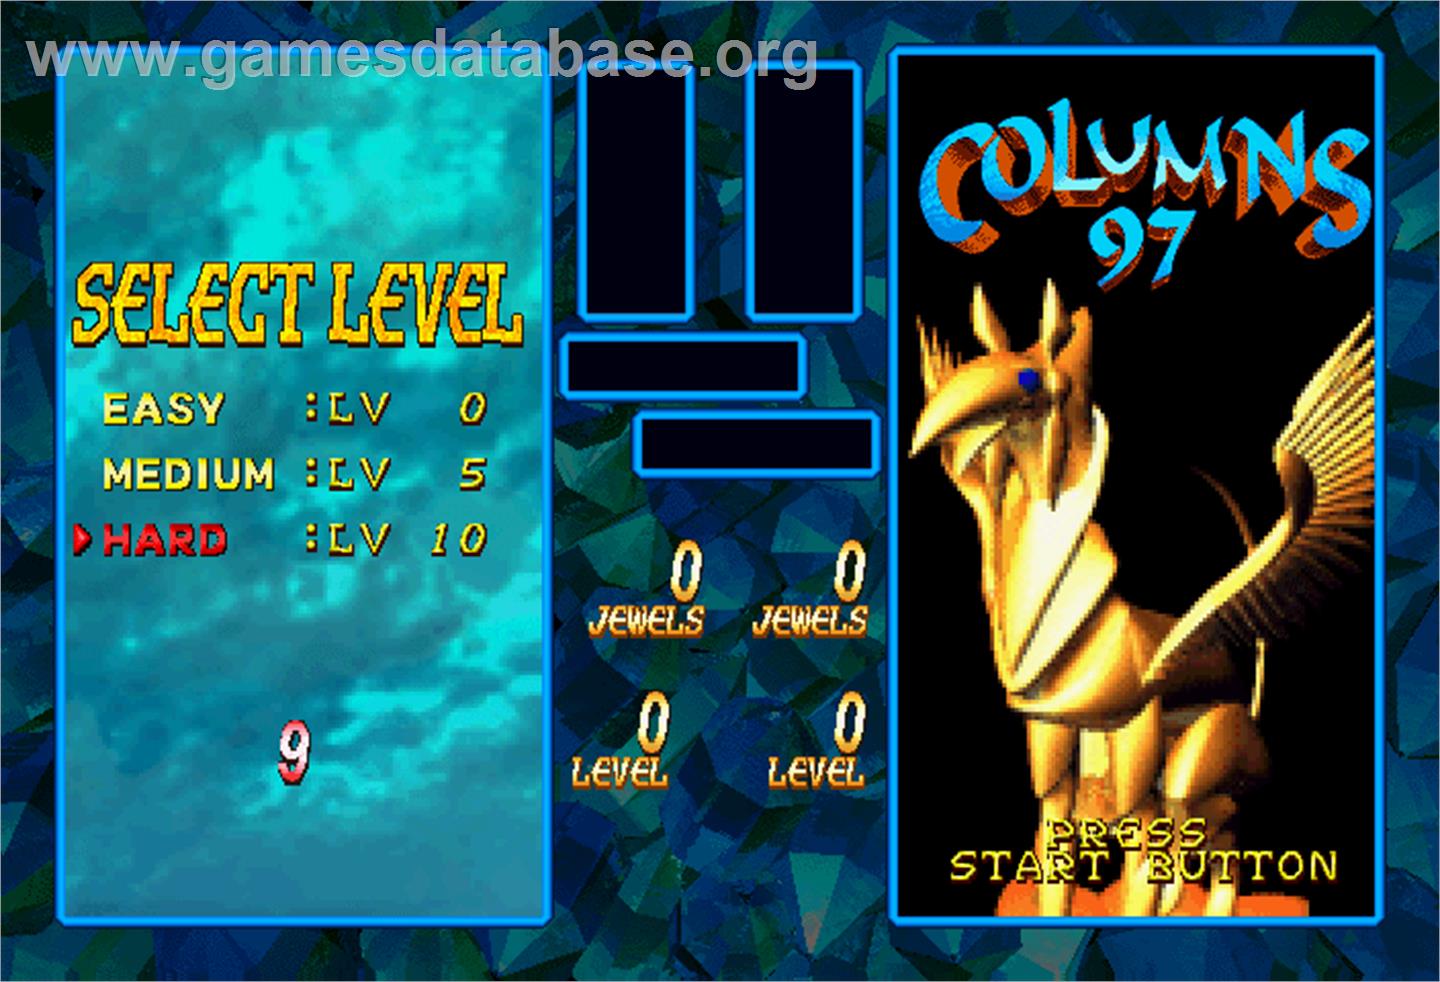 Columns '97 - Arcade - Artwork - Select Screen